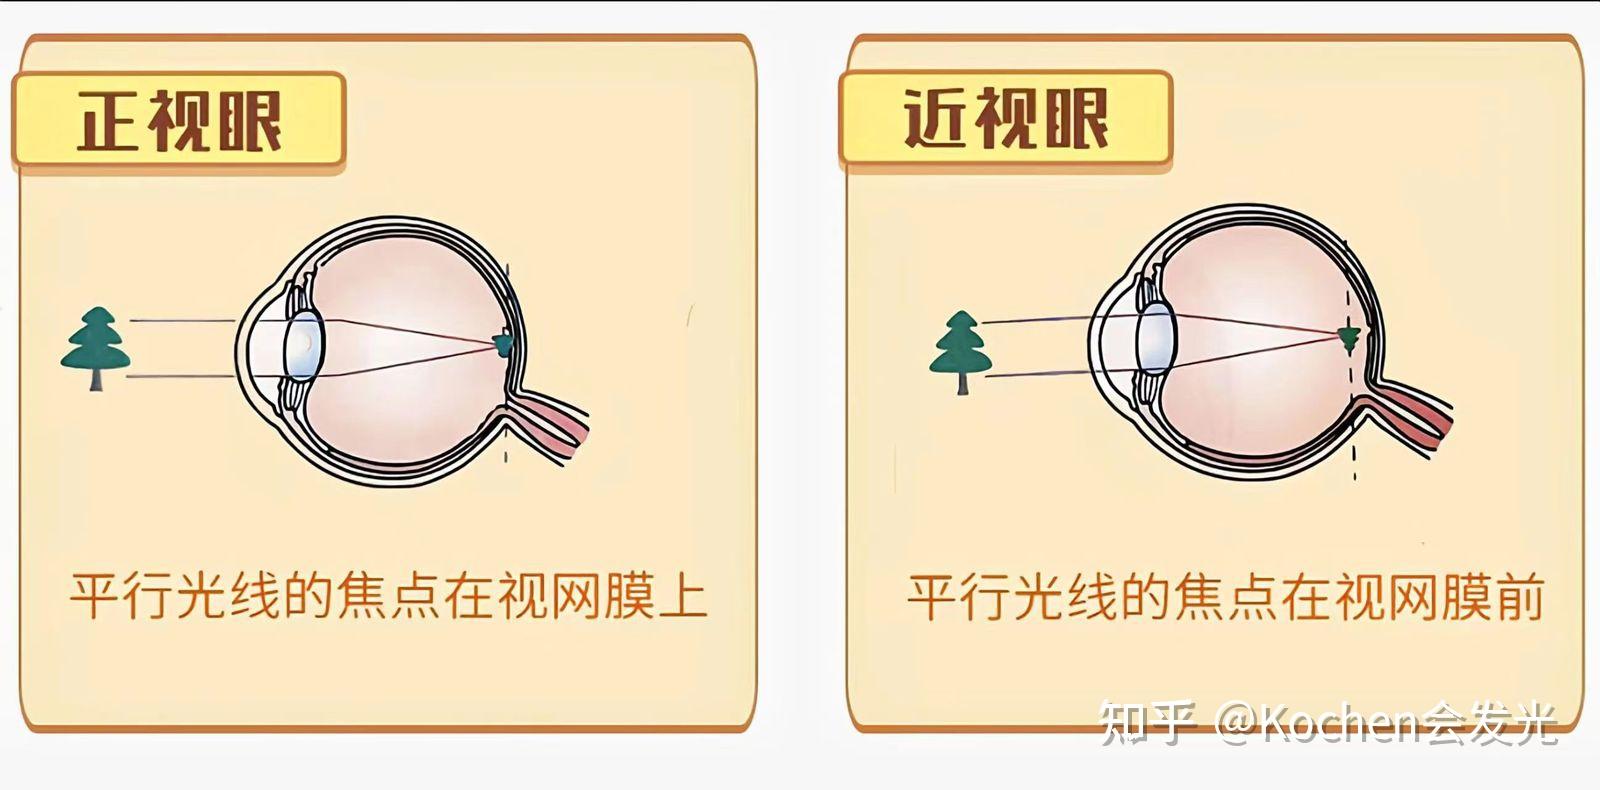 近视手术后多久可以正常用眼_厦门大学附属厦门眼科中心